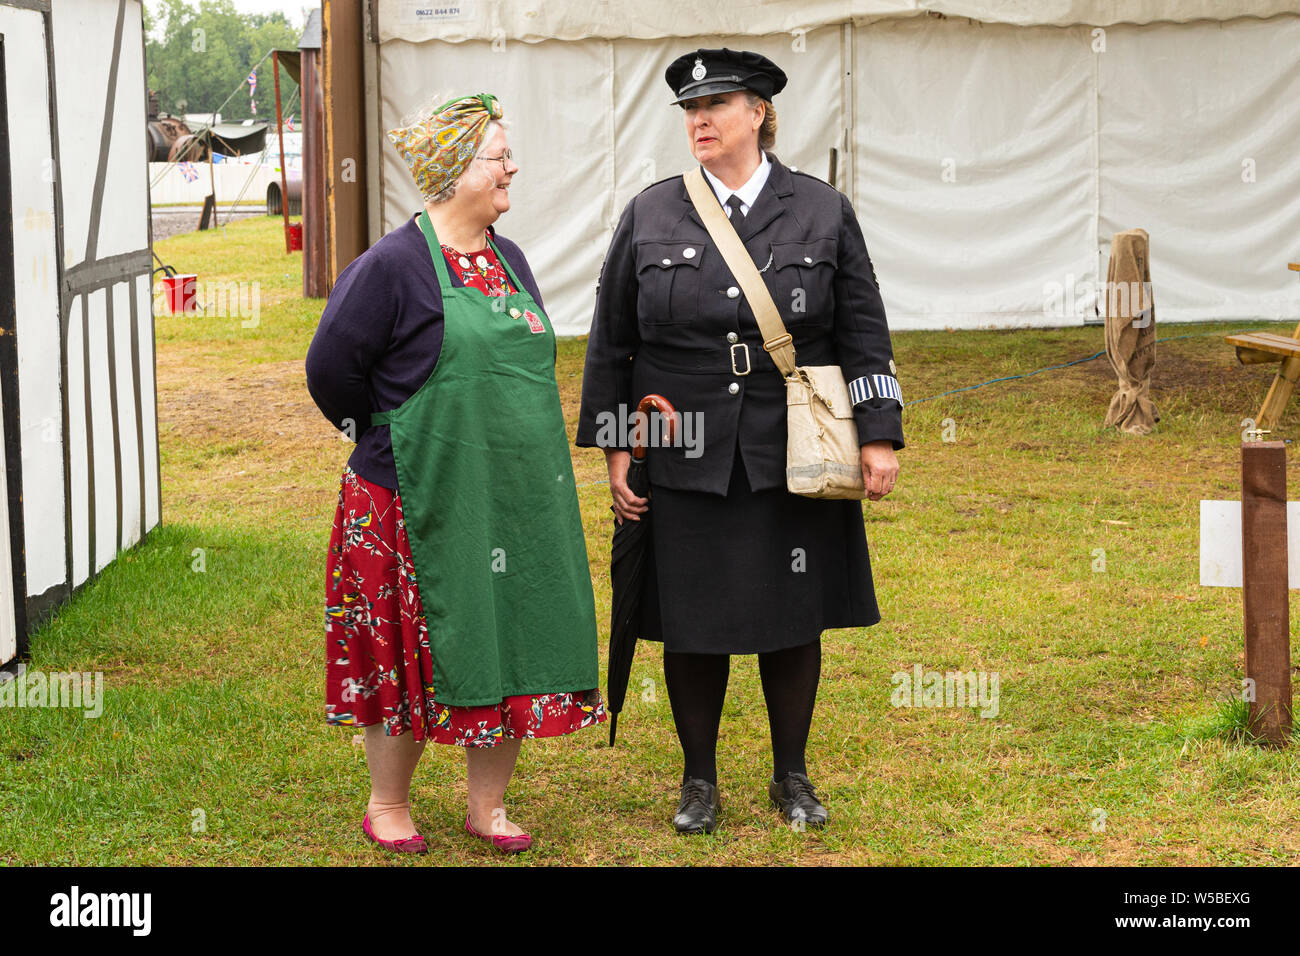 Krieg und Frieden Revival 2019, Paddock Wood Hop Farm. Zwei Damen im Jahre 1940 das Kostüm ein Gespräch. Eine Dame in Uniform. Stockfoto